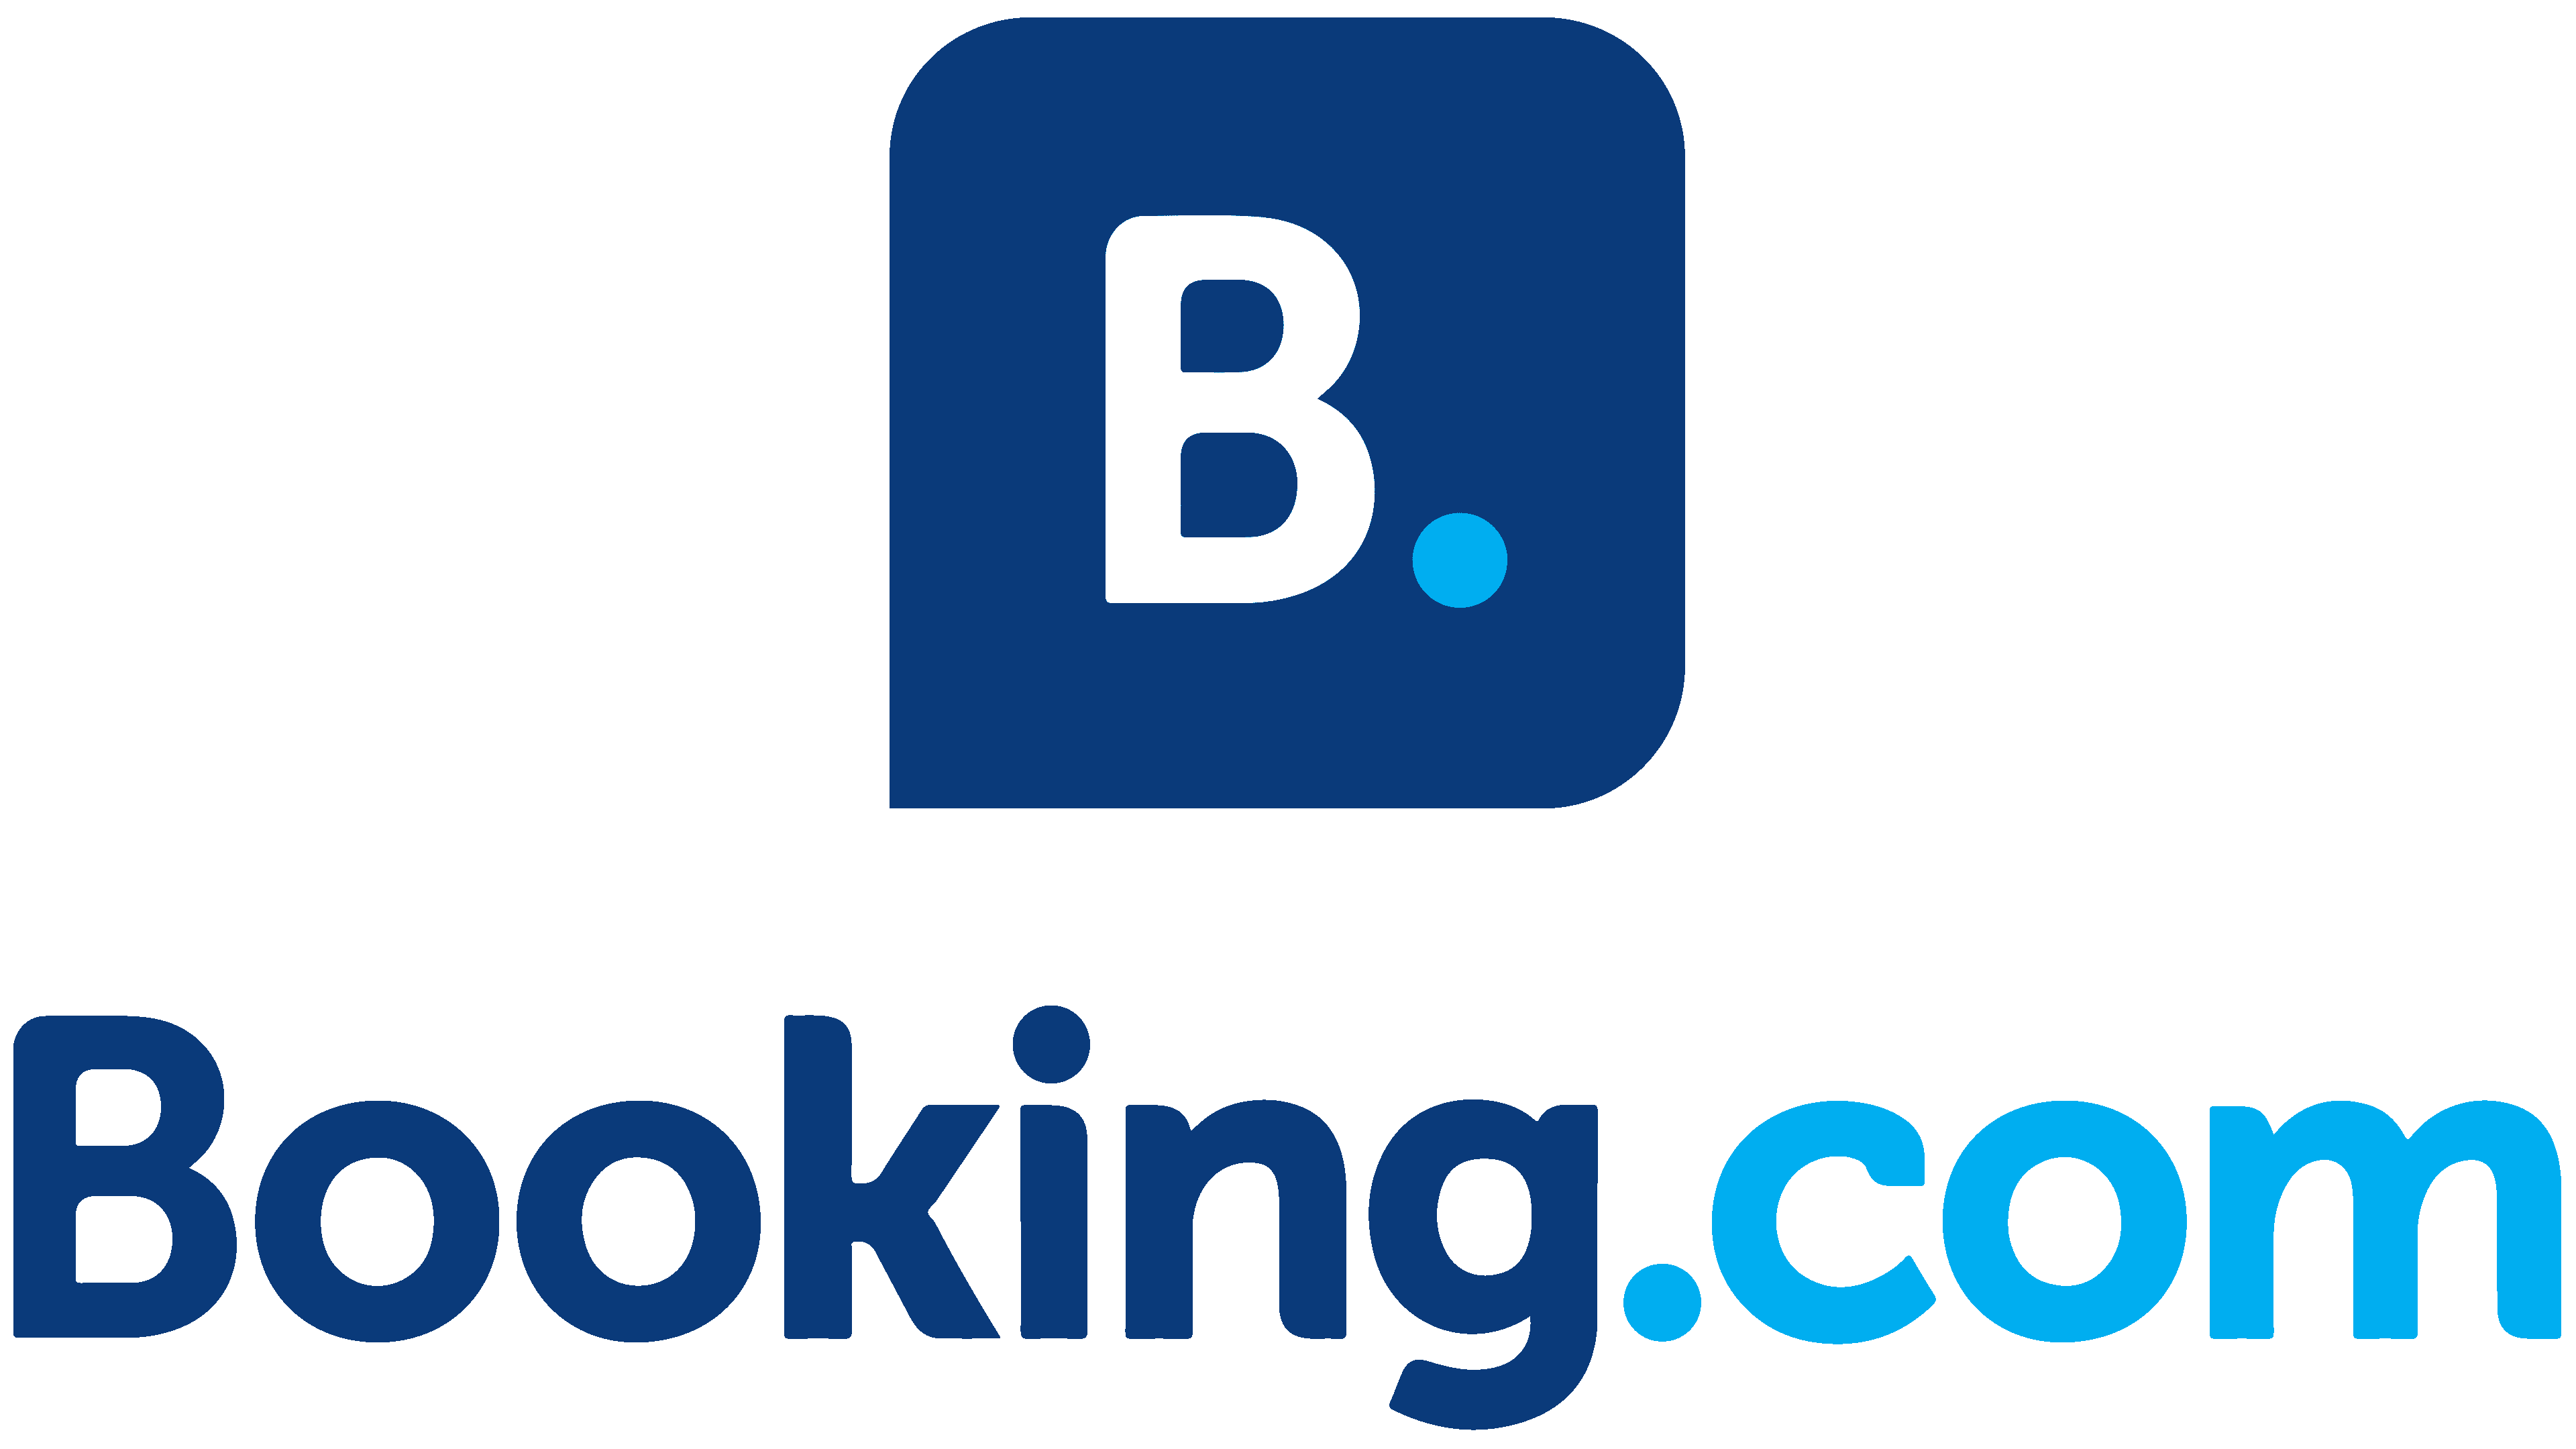 Booking.com Transparent Logo PNG